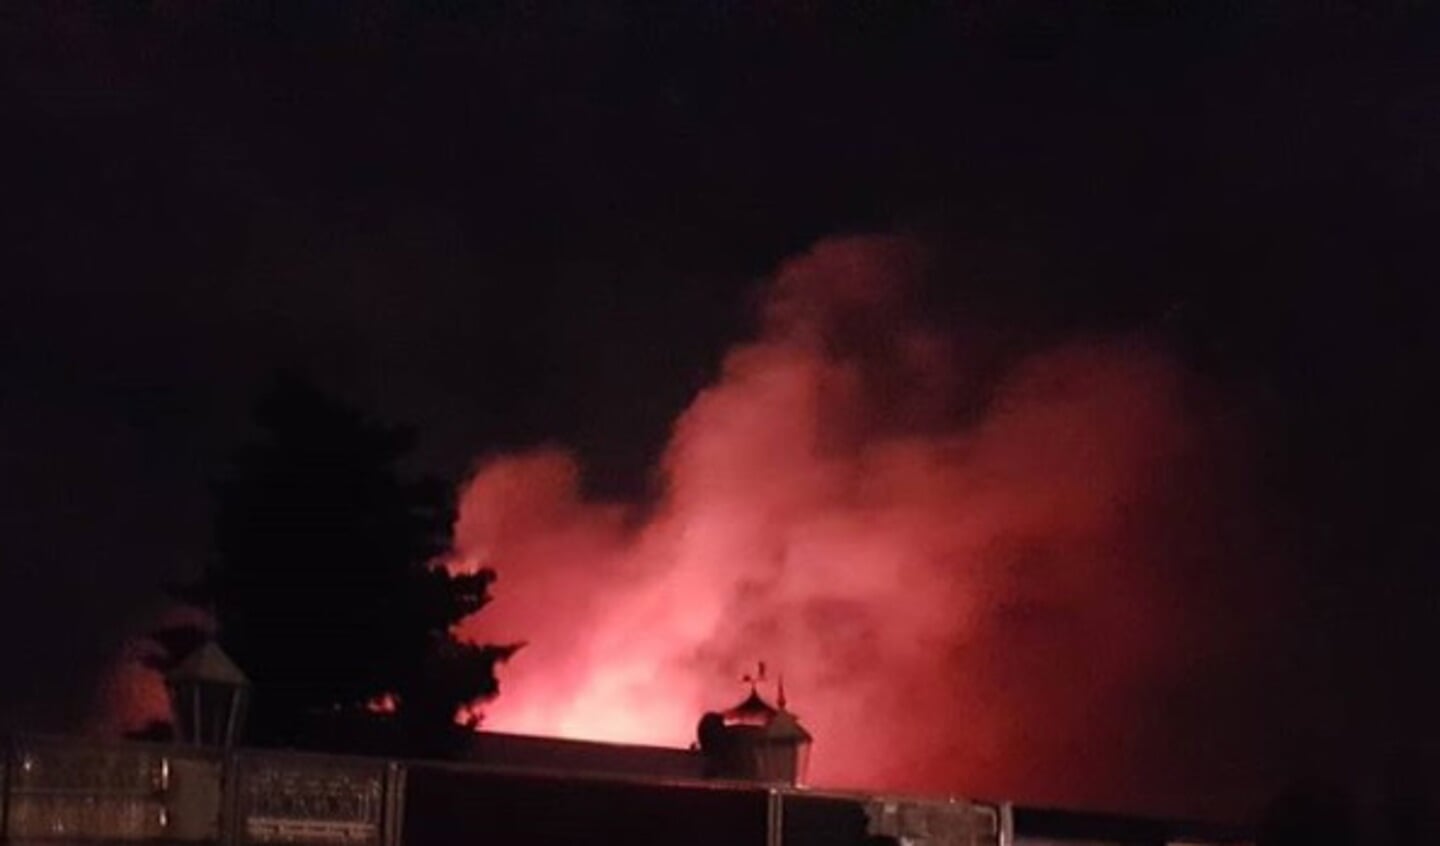 Brand in de Saksenweg. (Foto: Instagram wijkagent_niels_osszuid)